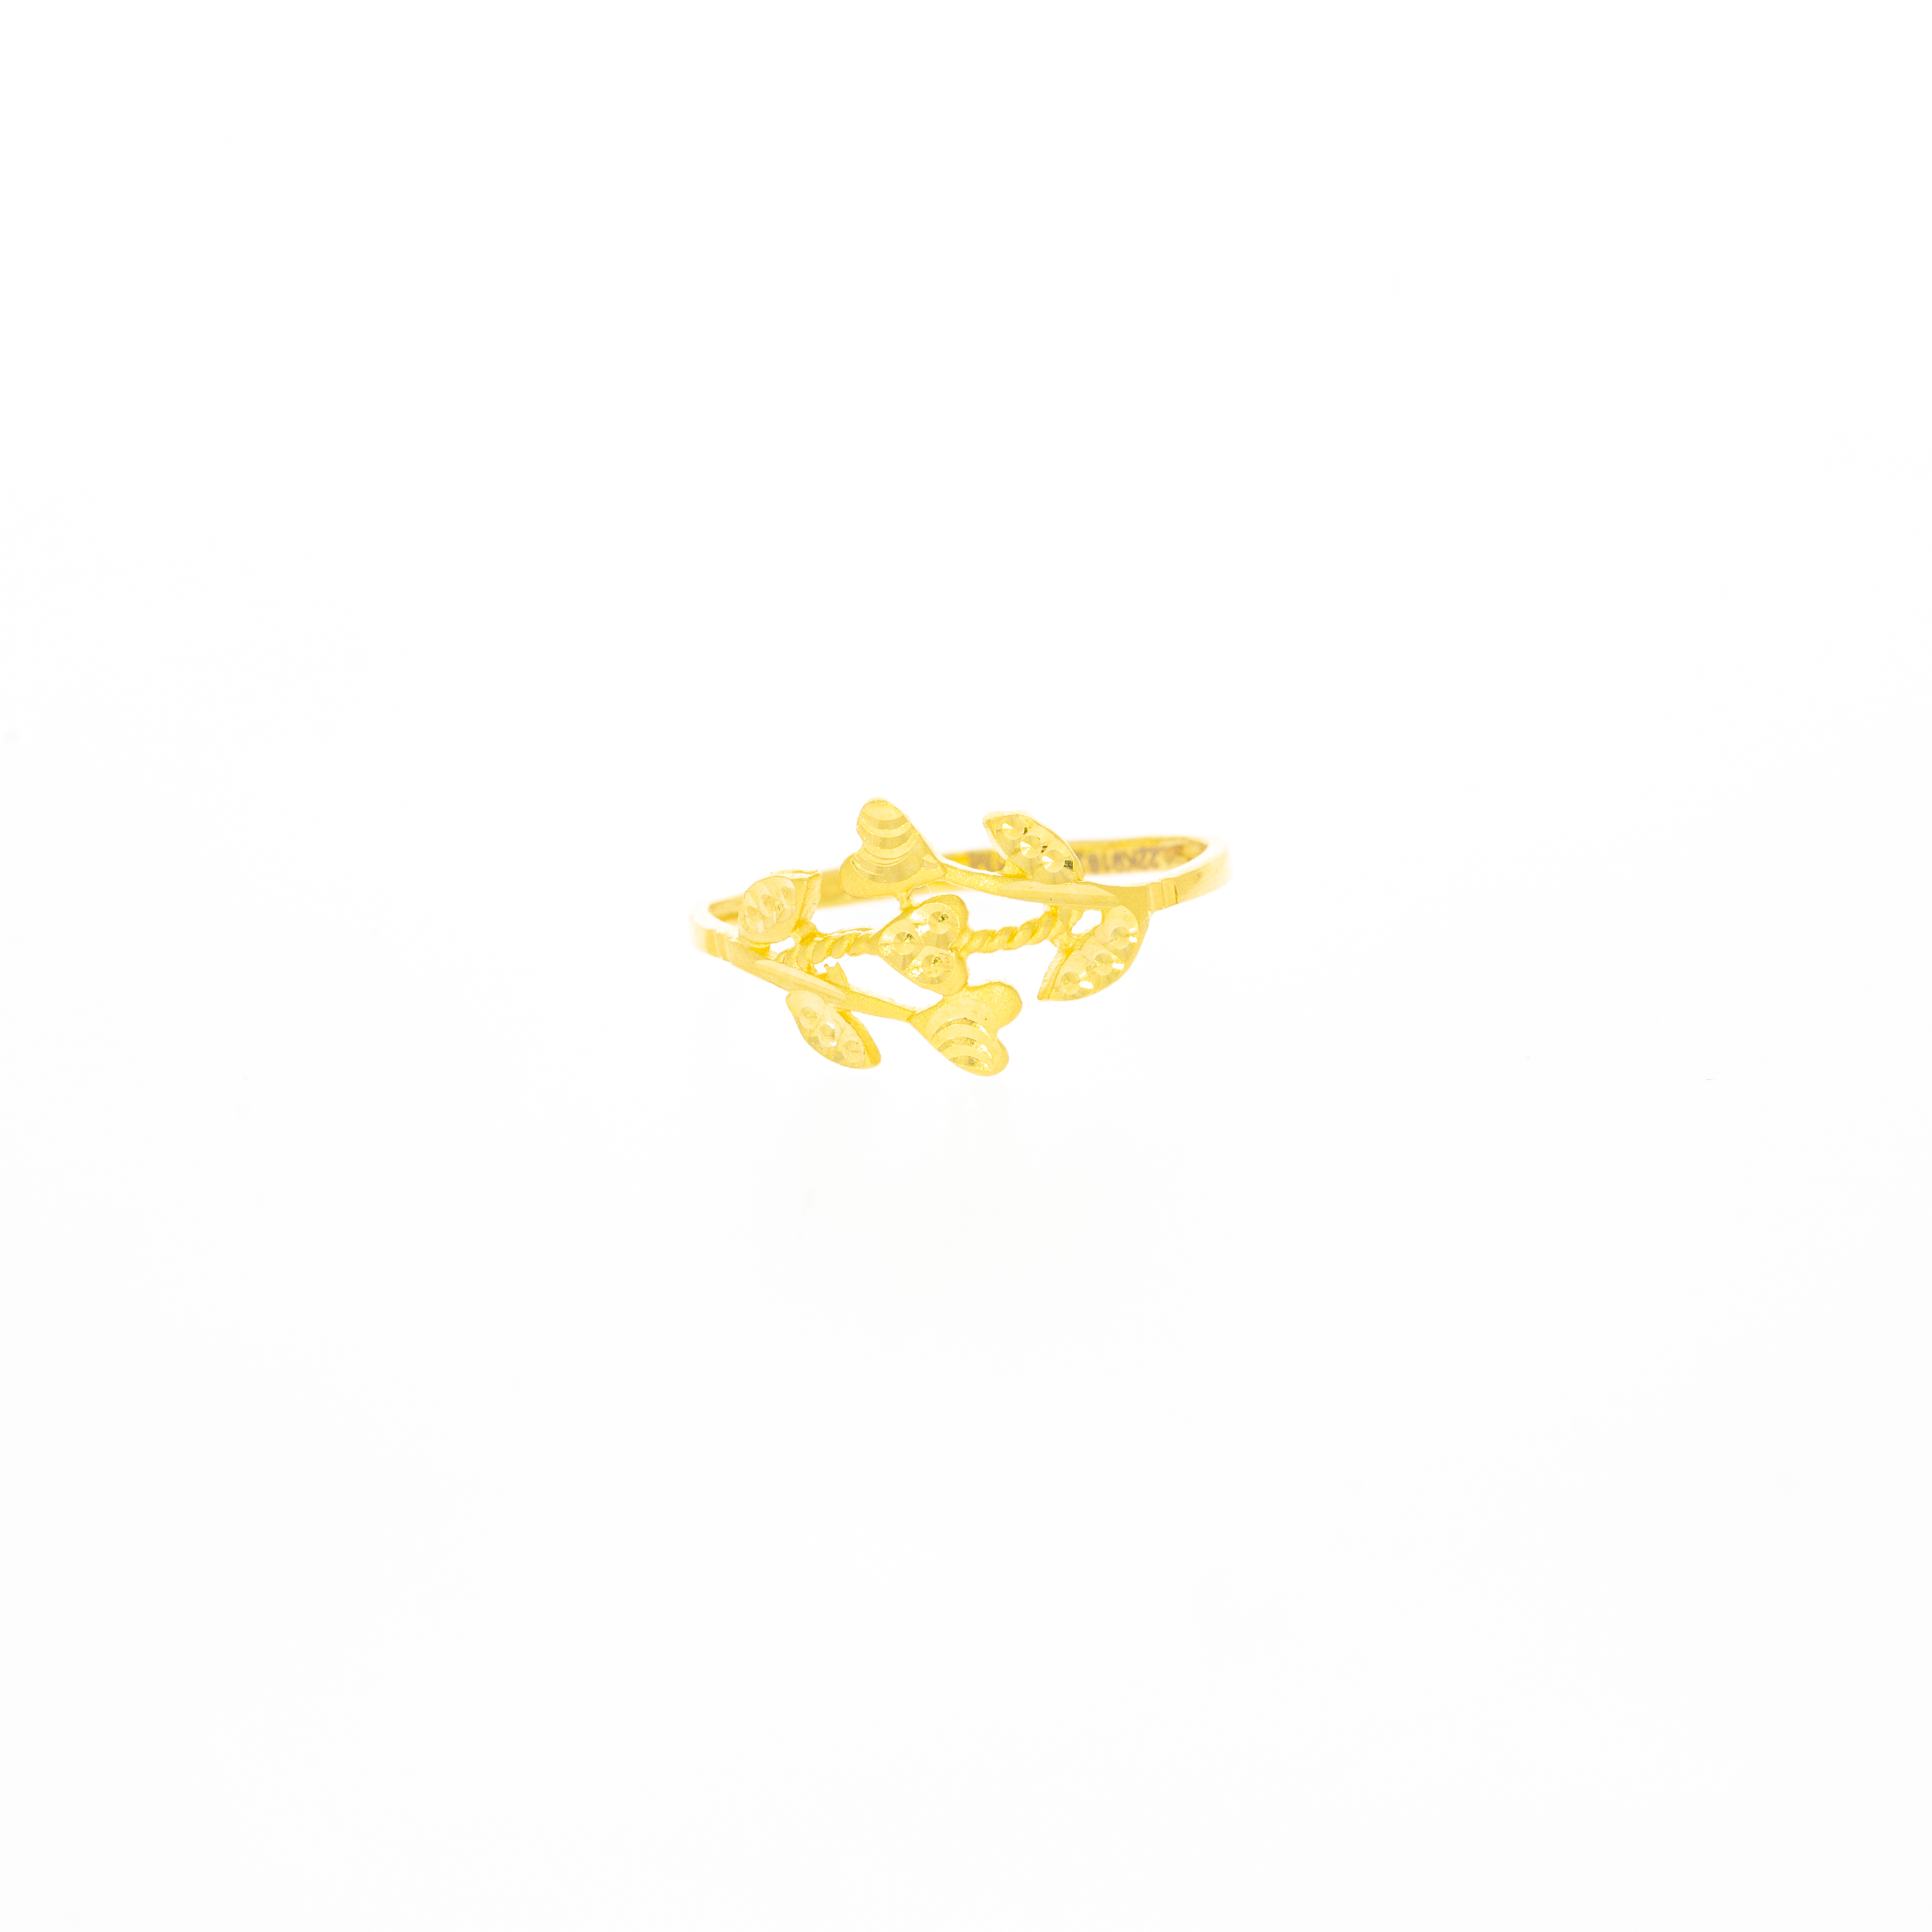 22kt Gold Simple Ring Design